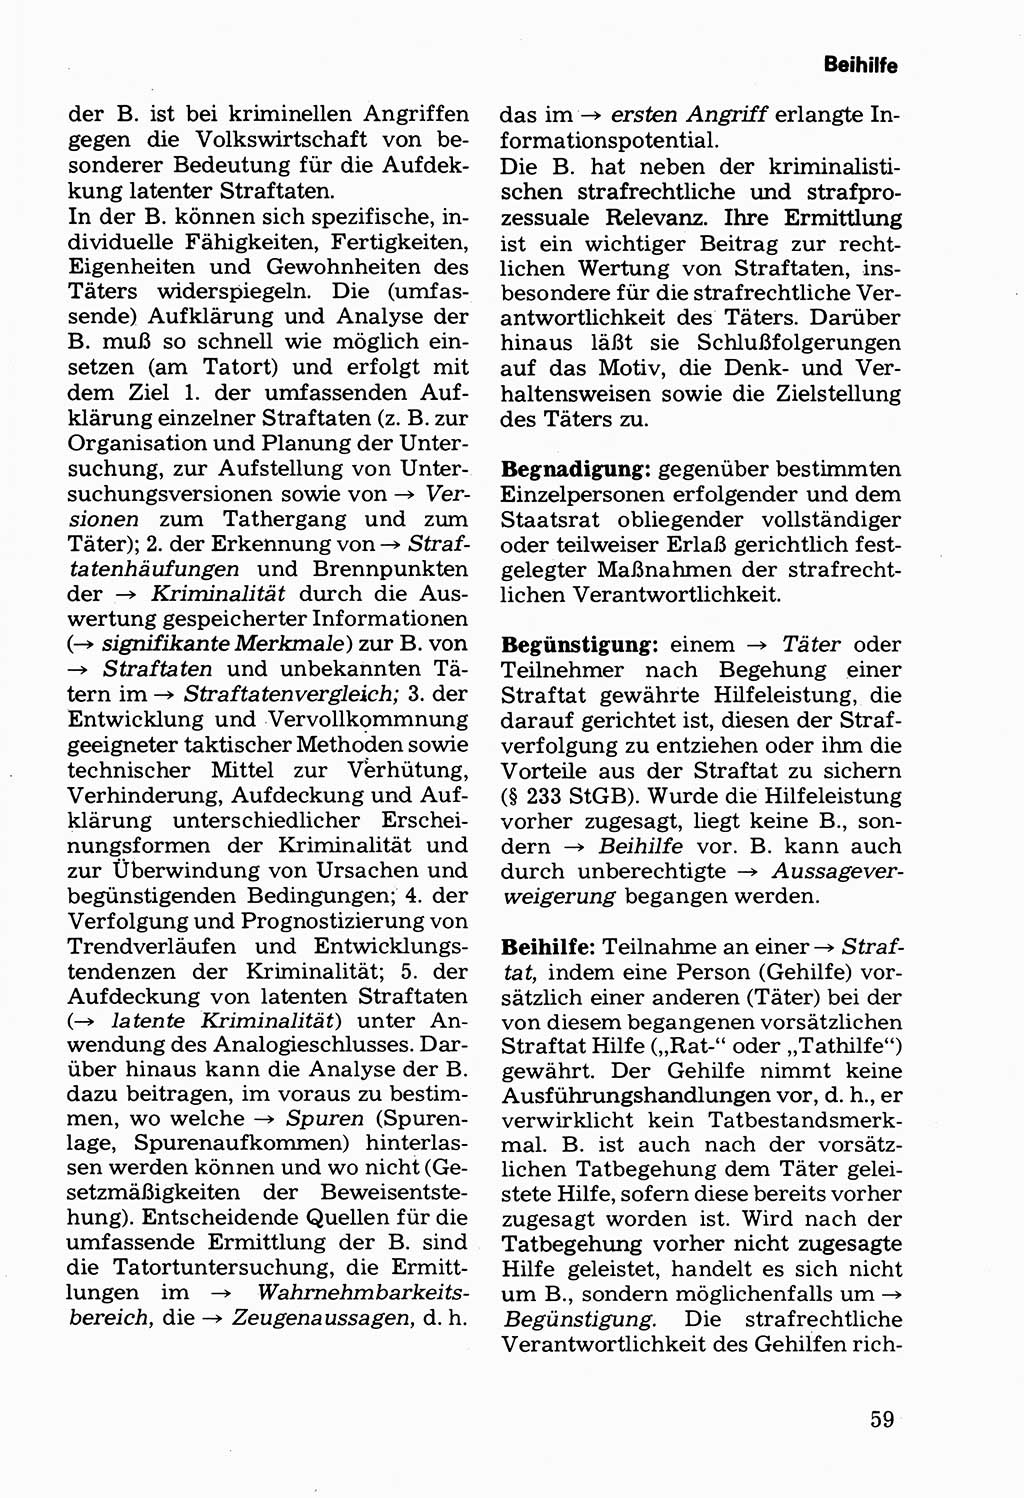 Wörterbuch der sozialistischen Kriminalistik [Deutsche Demokratische Republik (DDR)] 1981, Seite 59 (Wb. soz. Krim. DDR 1981, S. 59)